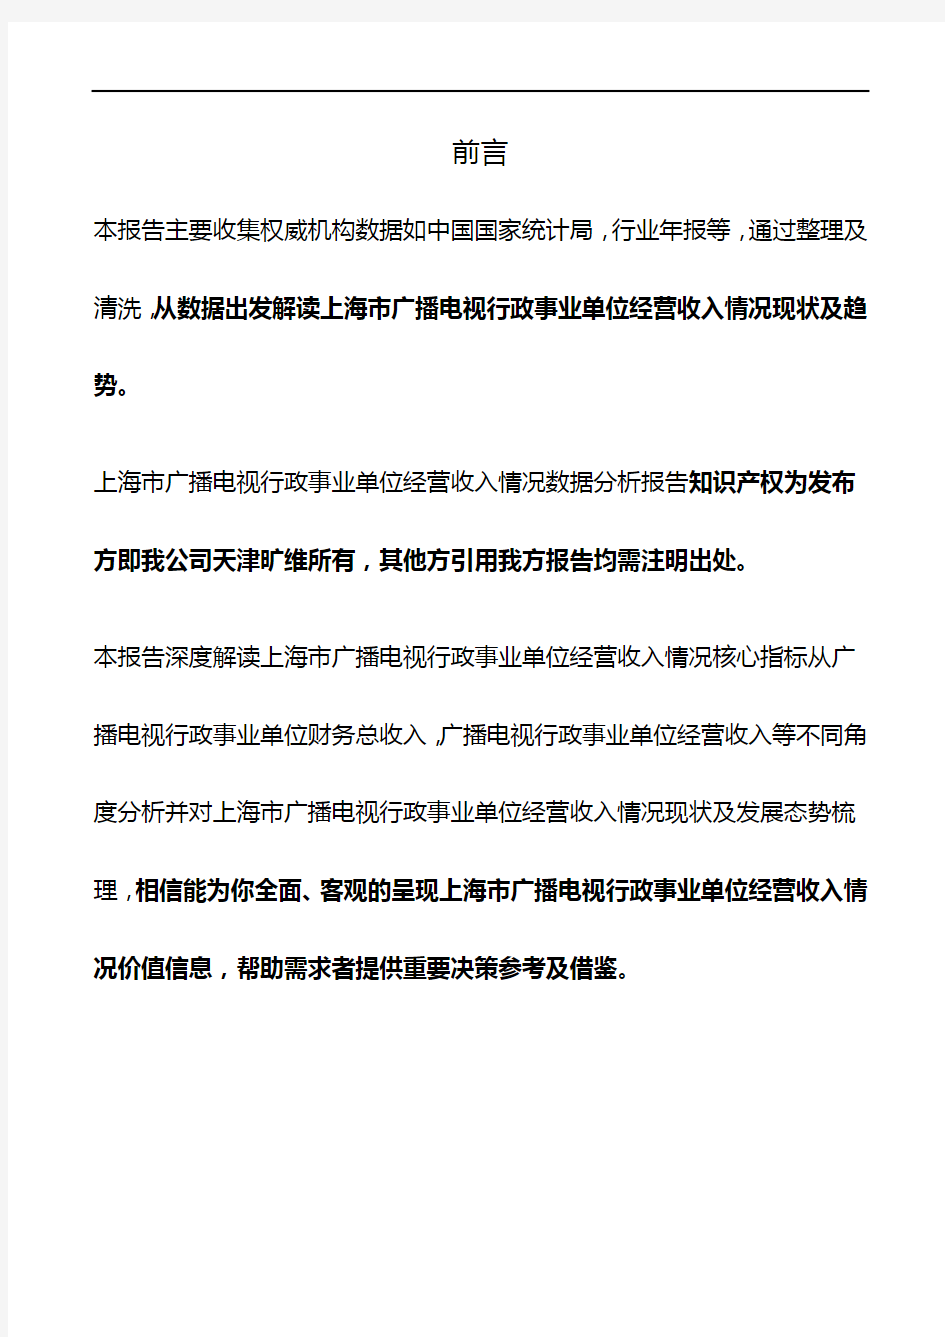 上海市广播电视行政事业单位经营收入情况3年数据分析报告2019版